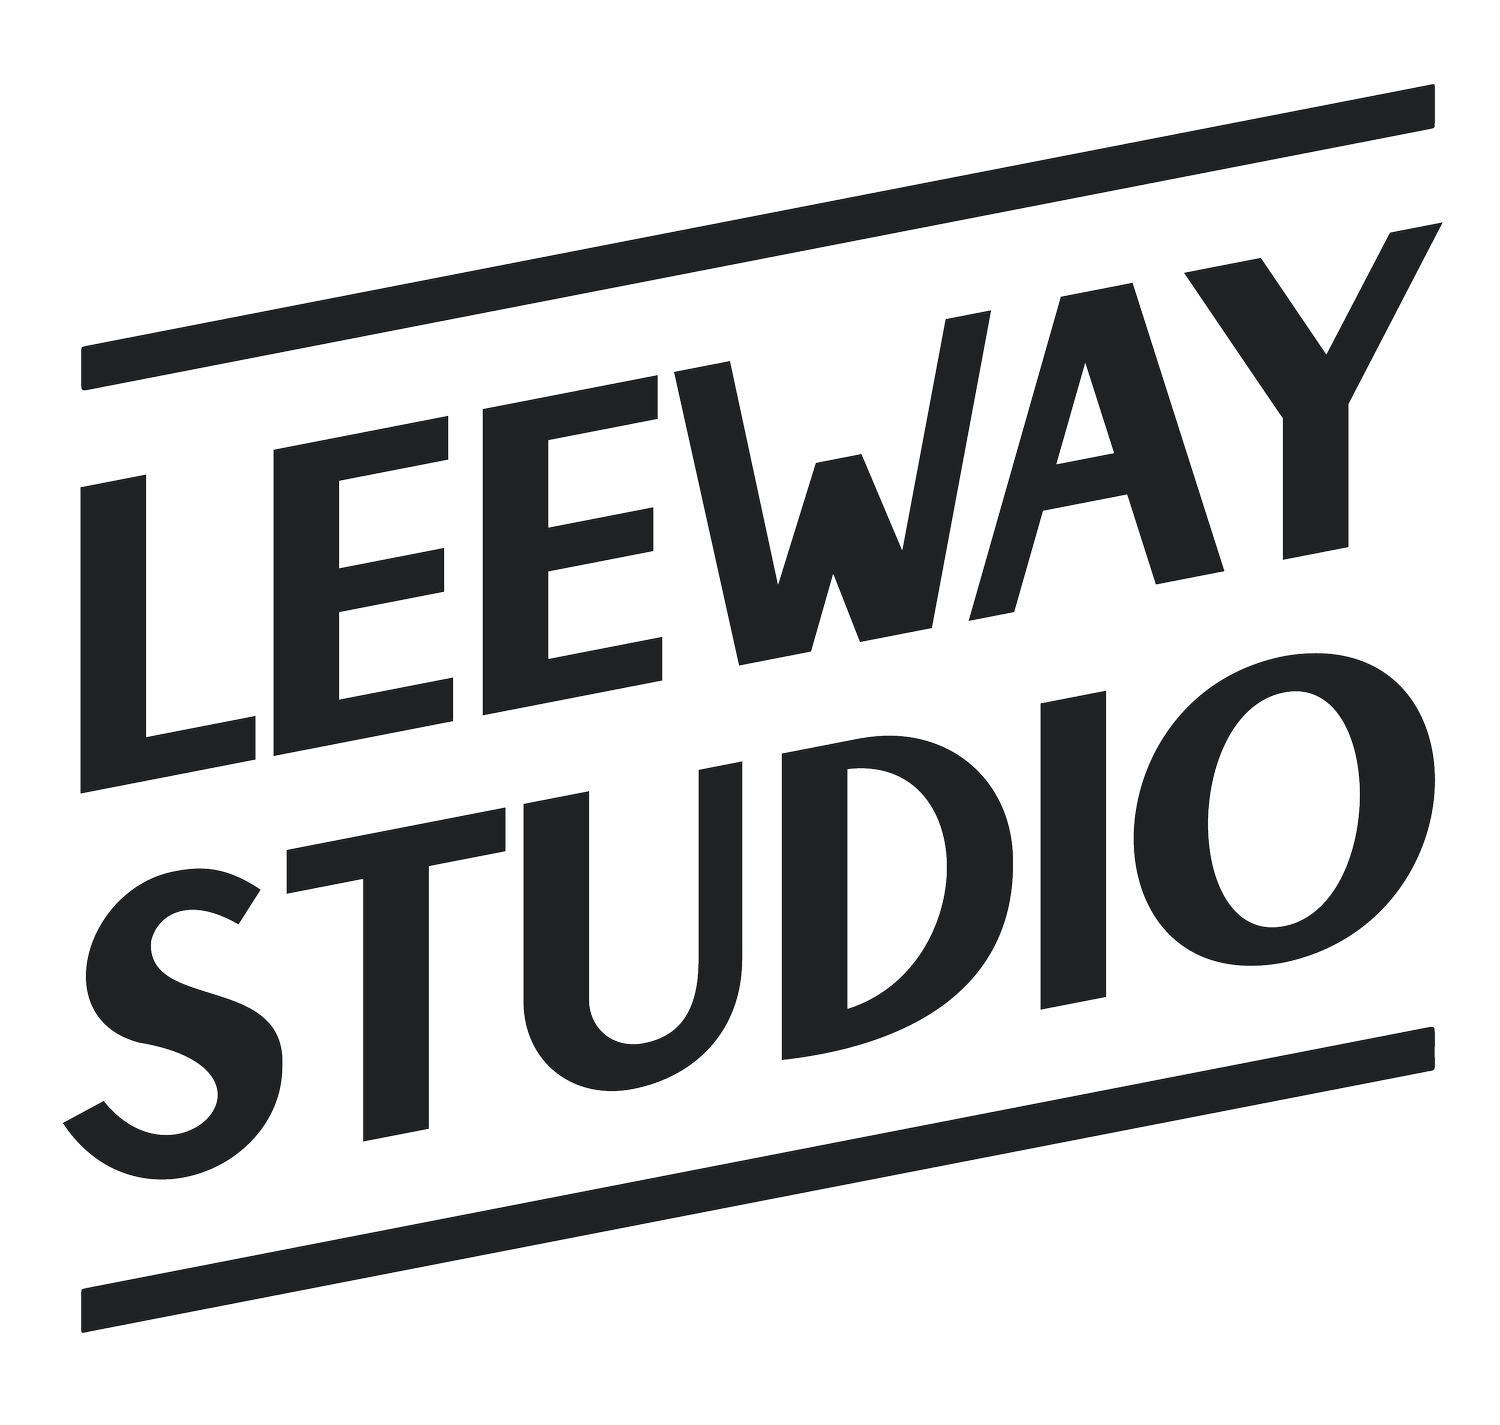 Leeway Studio